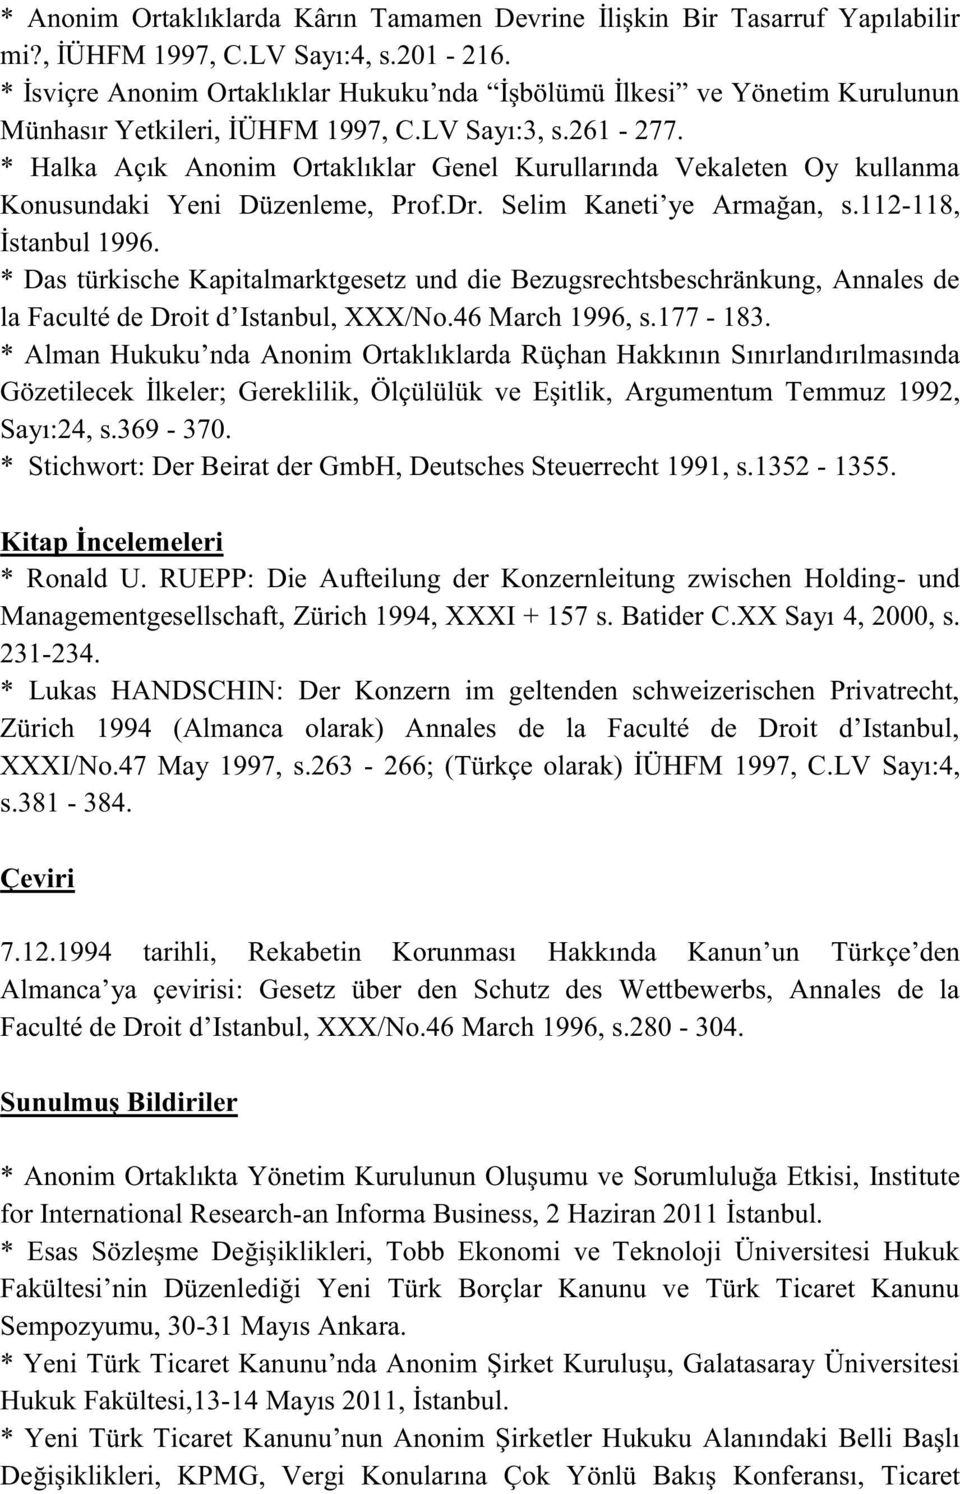 * Halka Açık Anonim Ortaklıklar Genel Kurullarında Vekaleten Oy kullanma Konusundaki Yeni Düzenleme, Prof.Dr. Selim Kaneti ye Armağan, s.112-118, İstanbul 1996.